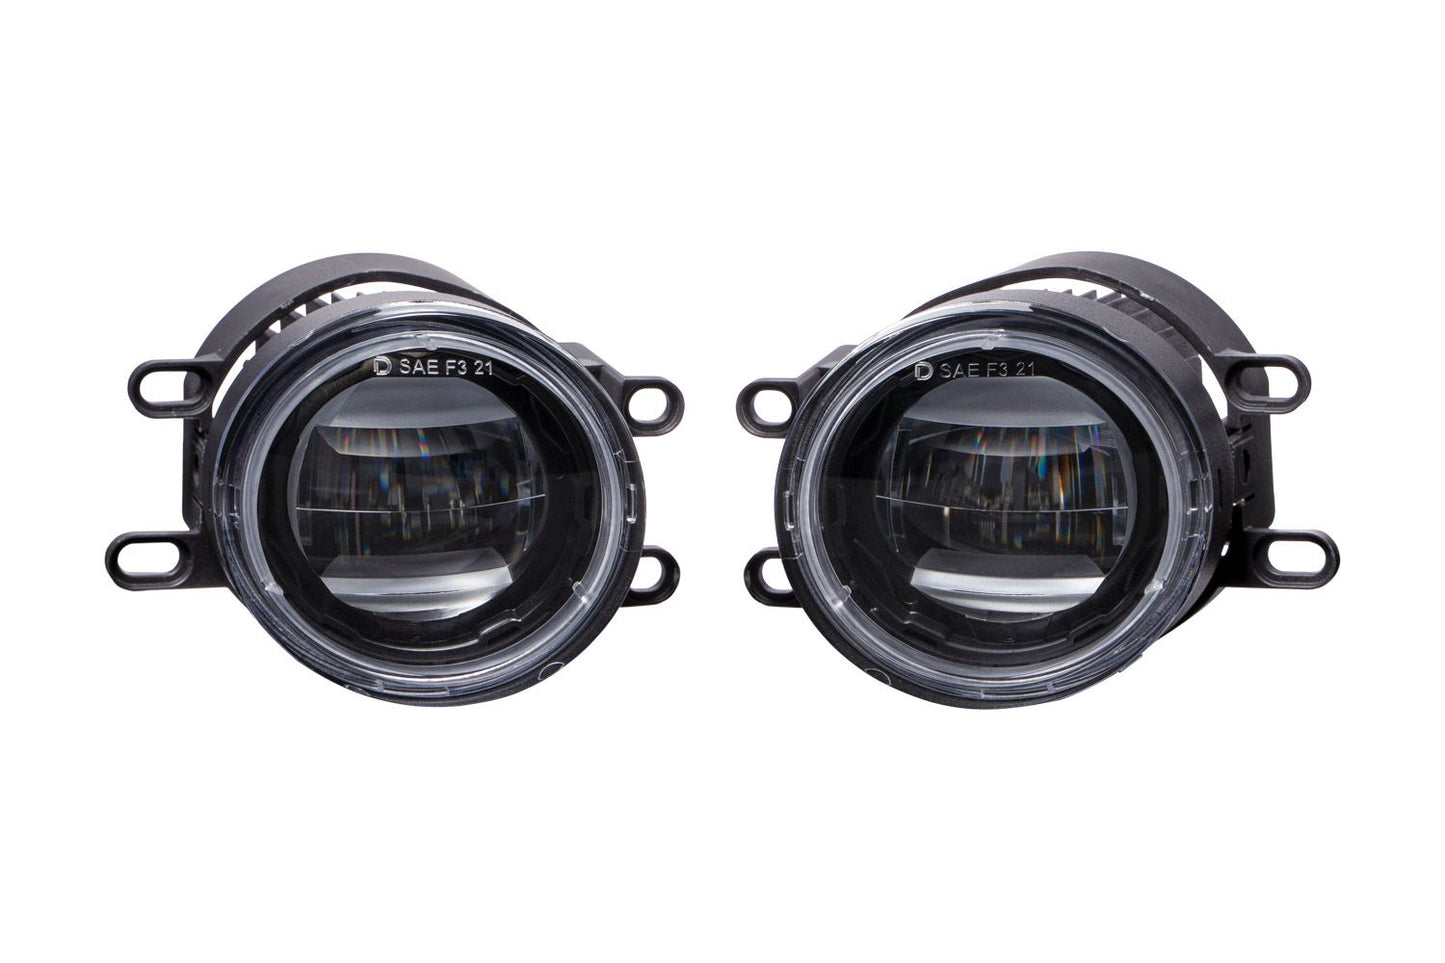 Diode Dynamics Elite Series LED Fog Light Kit (TOYOTA)